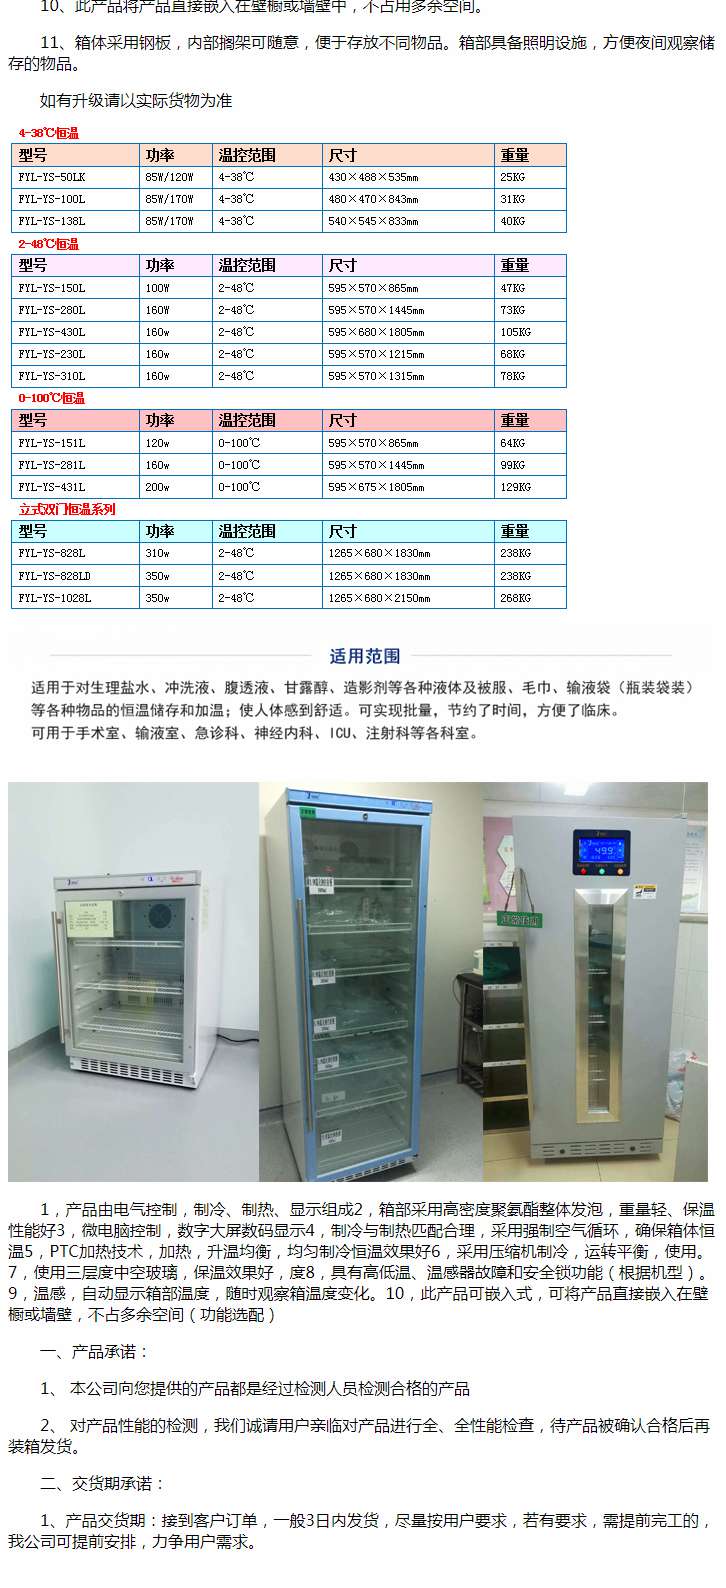 保温液体柜有效容积97L医技楼检验、病理科